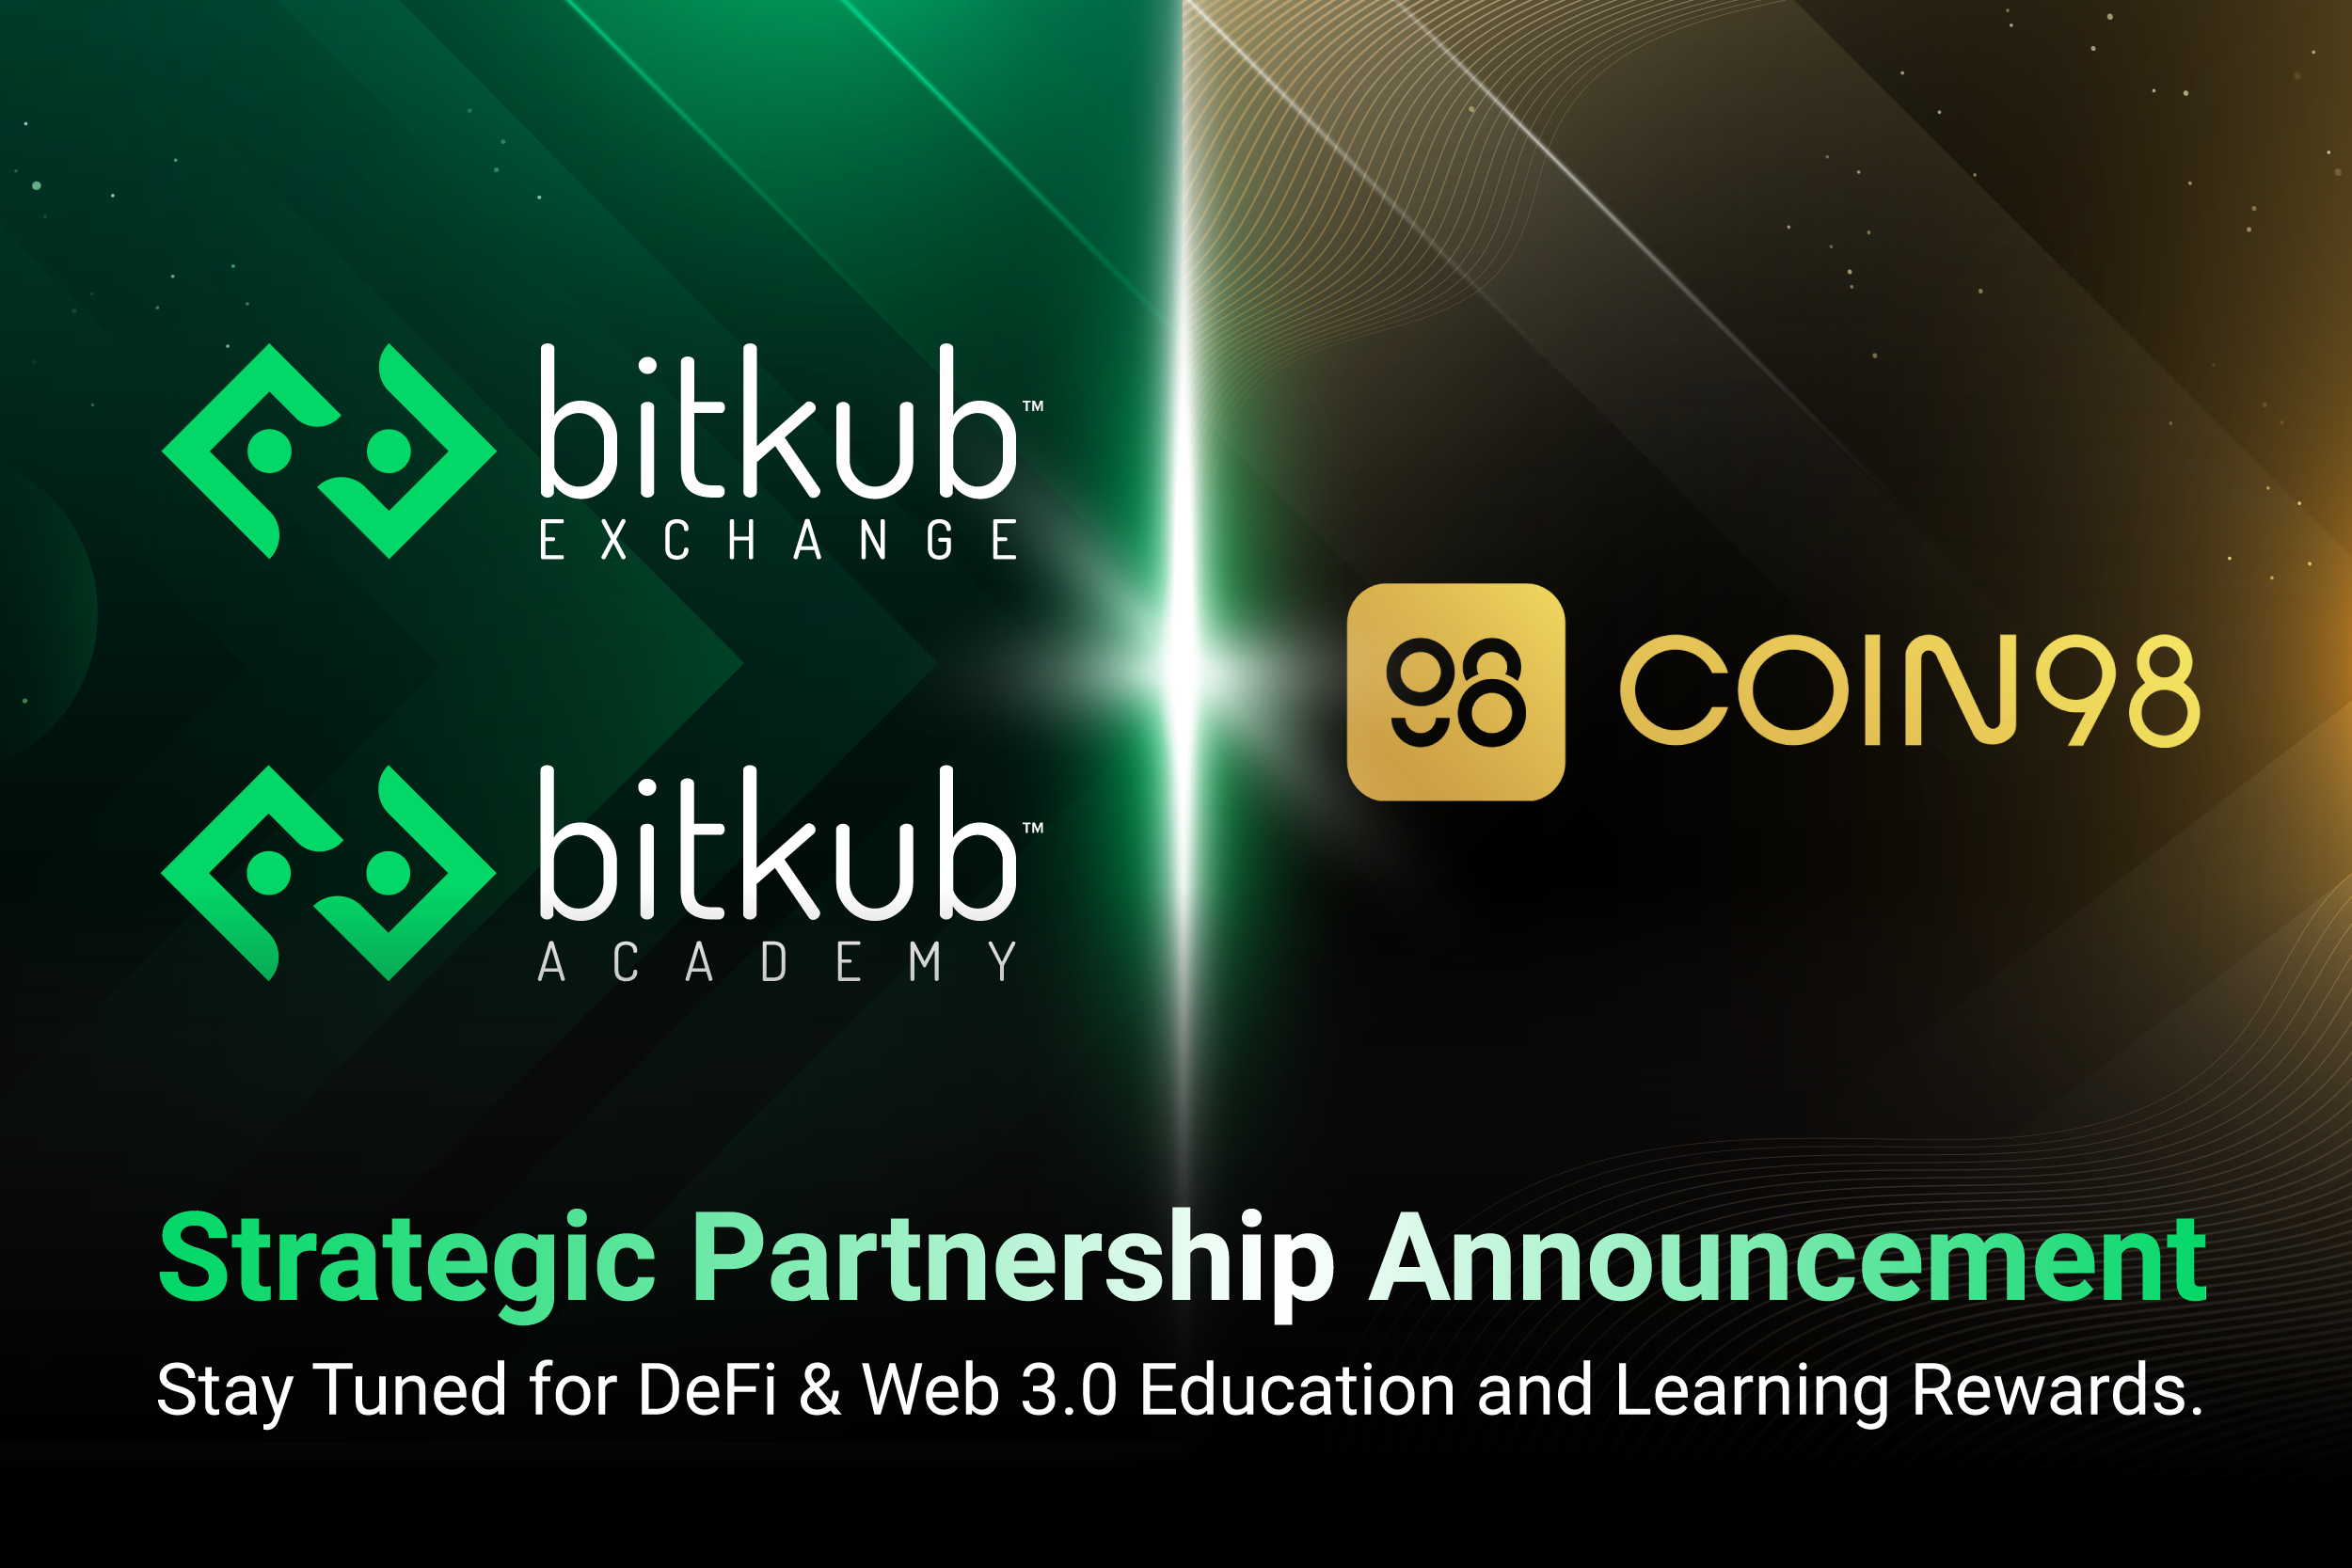 Bitkub Exchange และ Bitkub Academy ประกาศความร่วมมือกับ Coin98 ผนึกกำลังกระจายความรู้เทคโนโลยีการเงินแบบกระจายศูนย์ (DeFi) และ​ Web 3